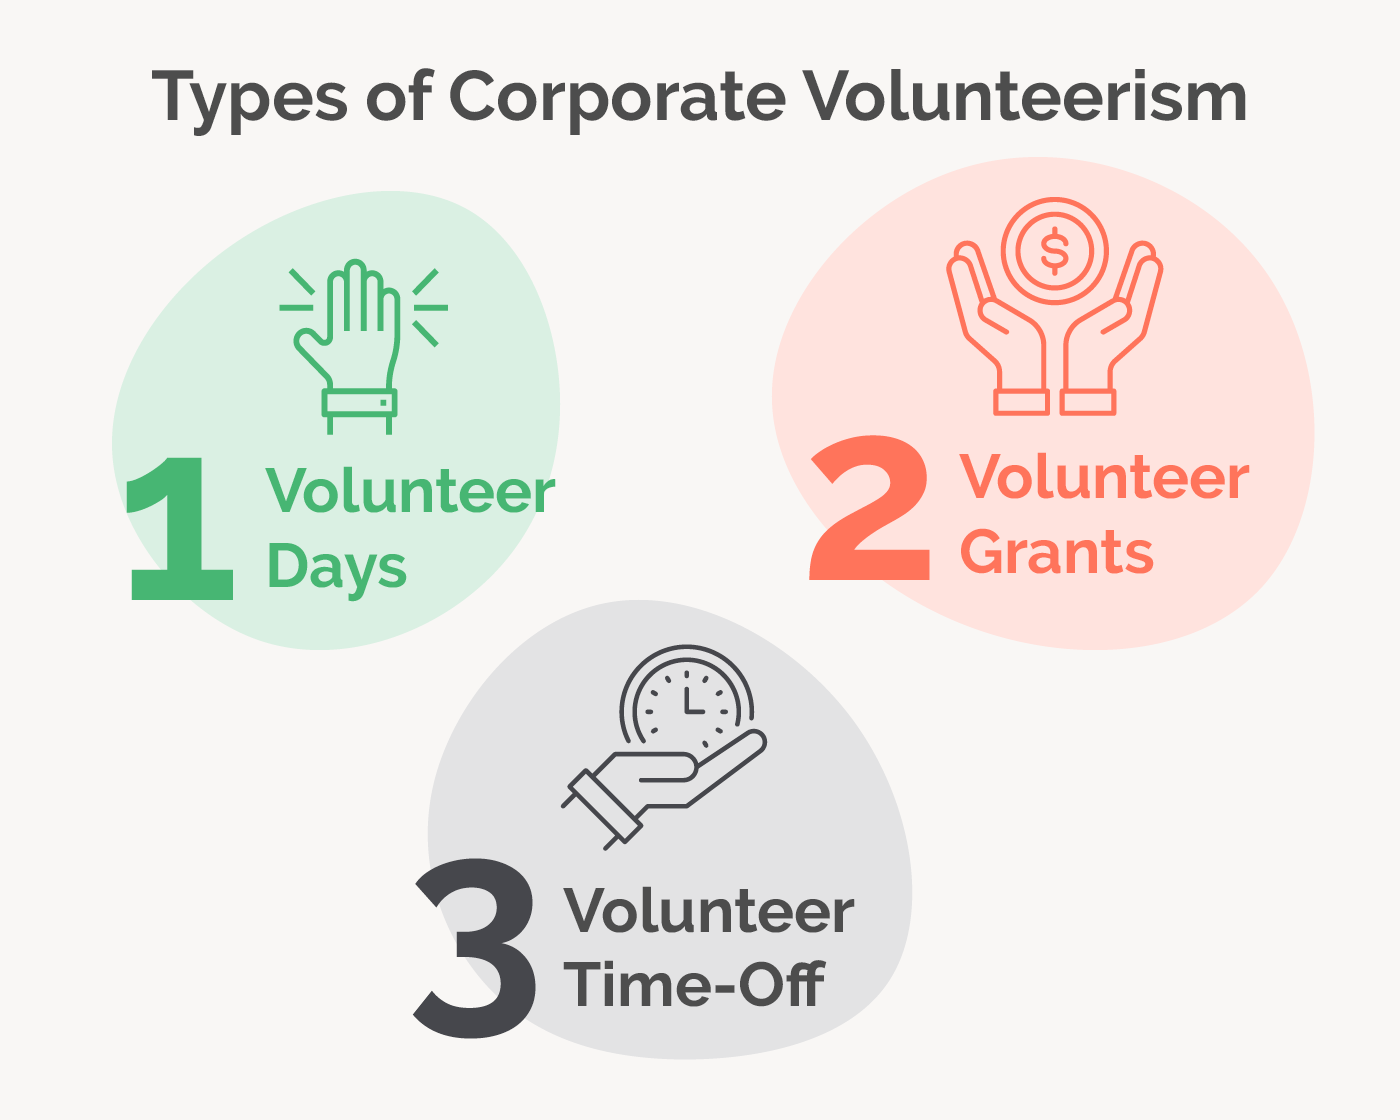 The image shows three types of corporate volunteerism: volunteer days, volunteer grants, and volunteer time off. 